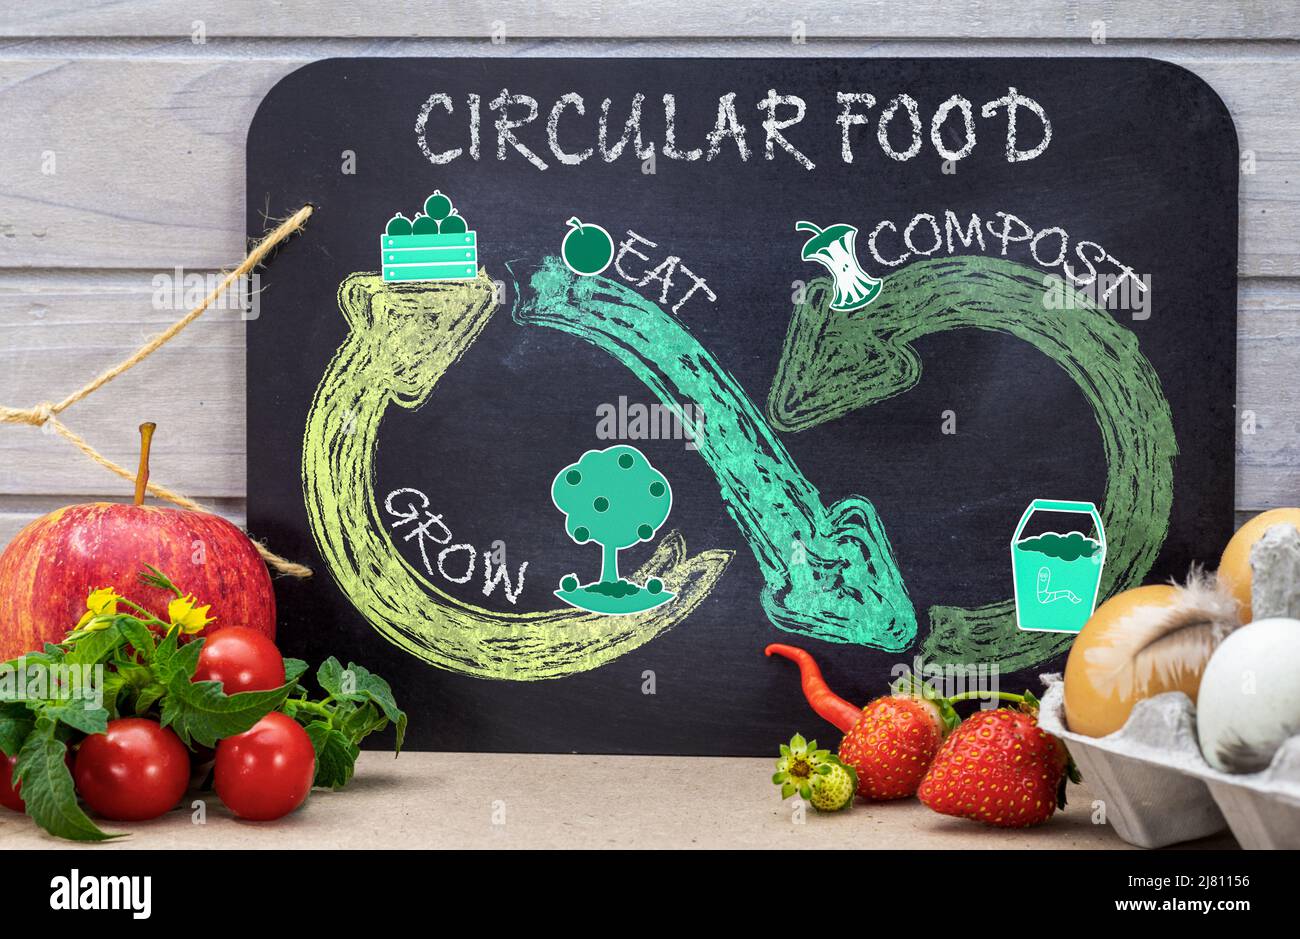 Ciclo alimentare circolare su lavagna con adesivi e disegno in gesso, ridurre gli sprechi alimentari, crescere, mangiare, compost per un consumo alimentare sostenibile. Foto Stock